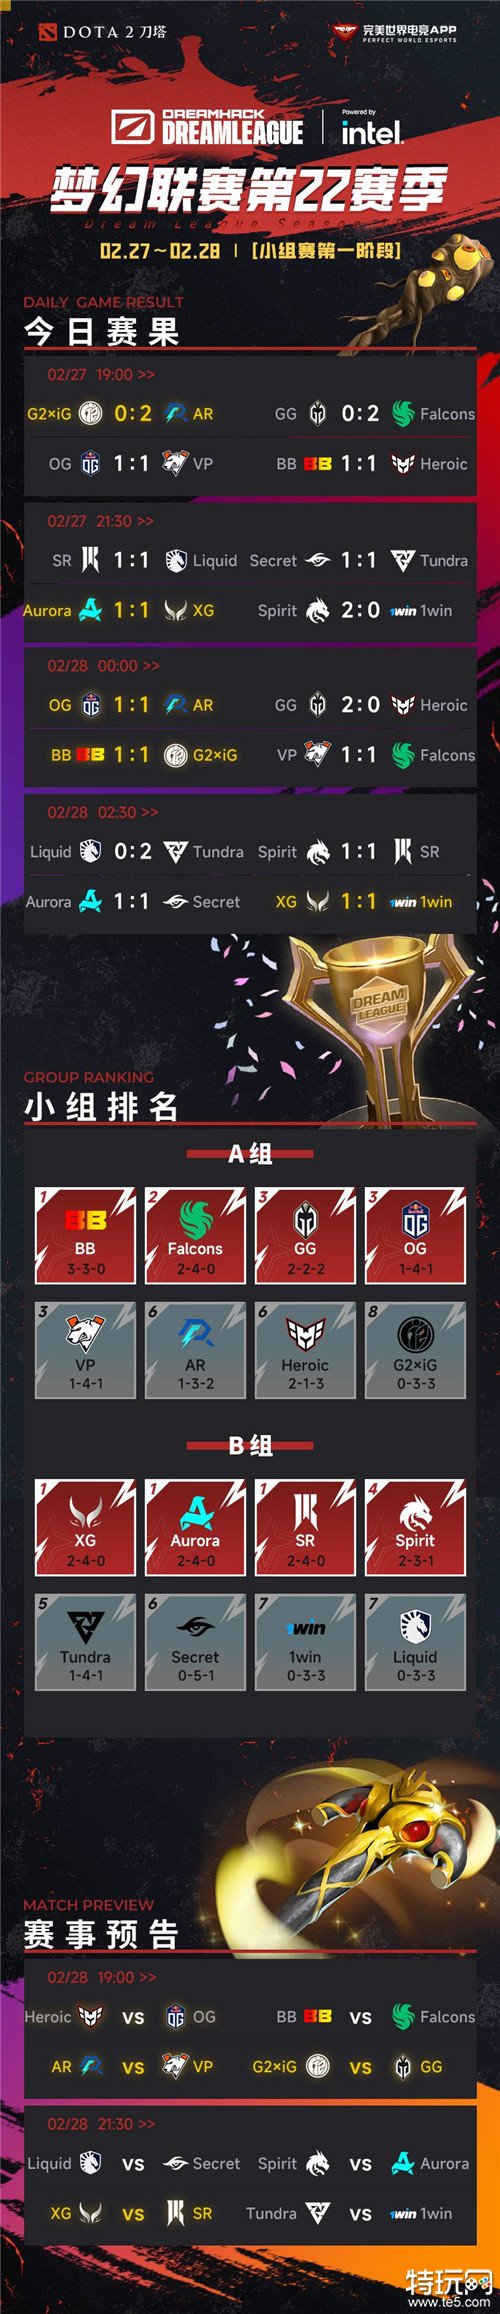 DOTA2梦幻联赛S22小组赛第三日结束 中国战队XG继续位于B组第一